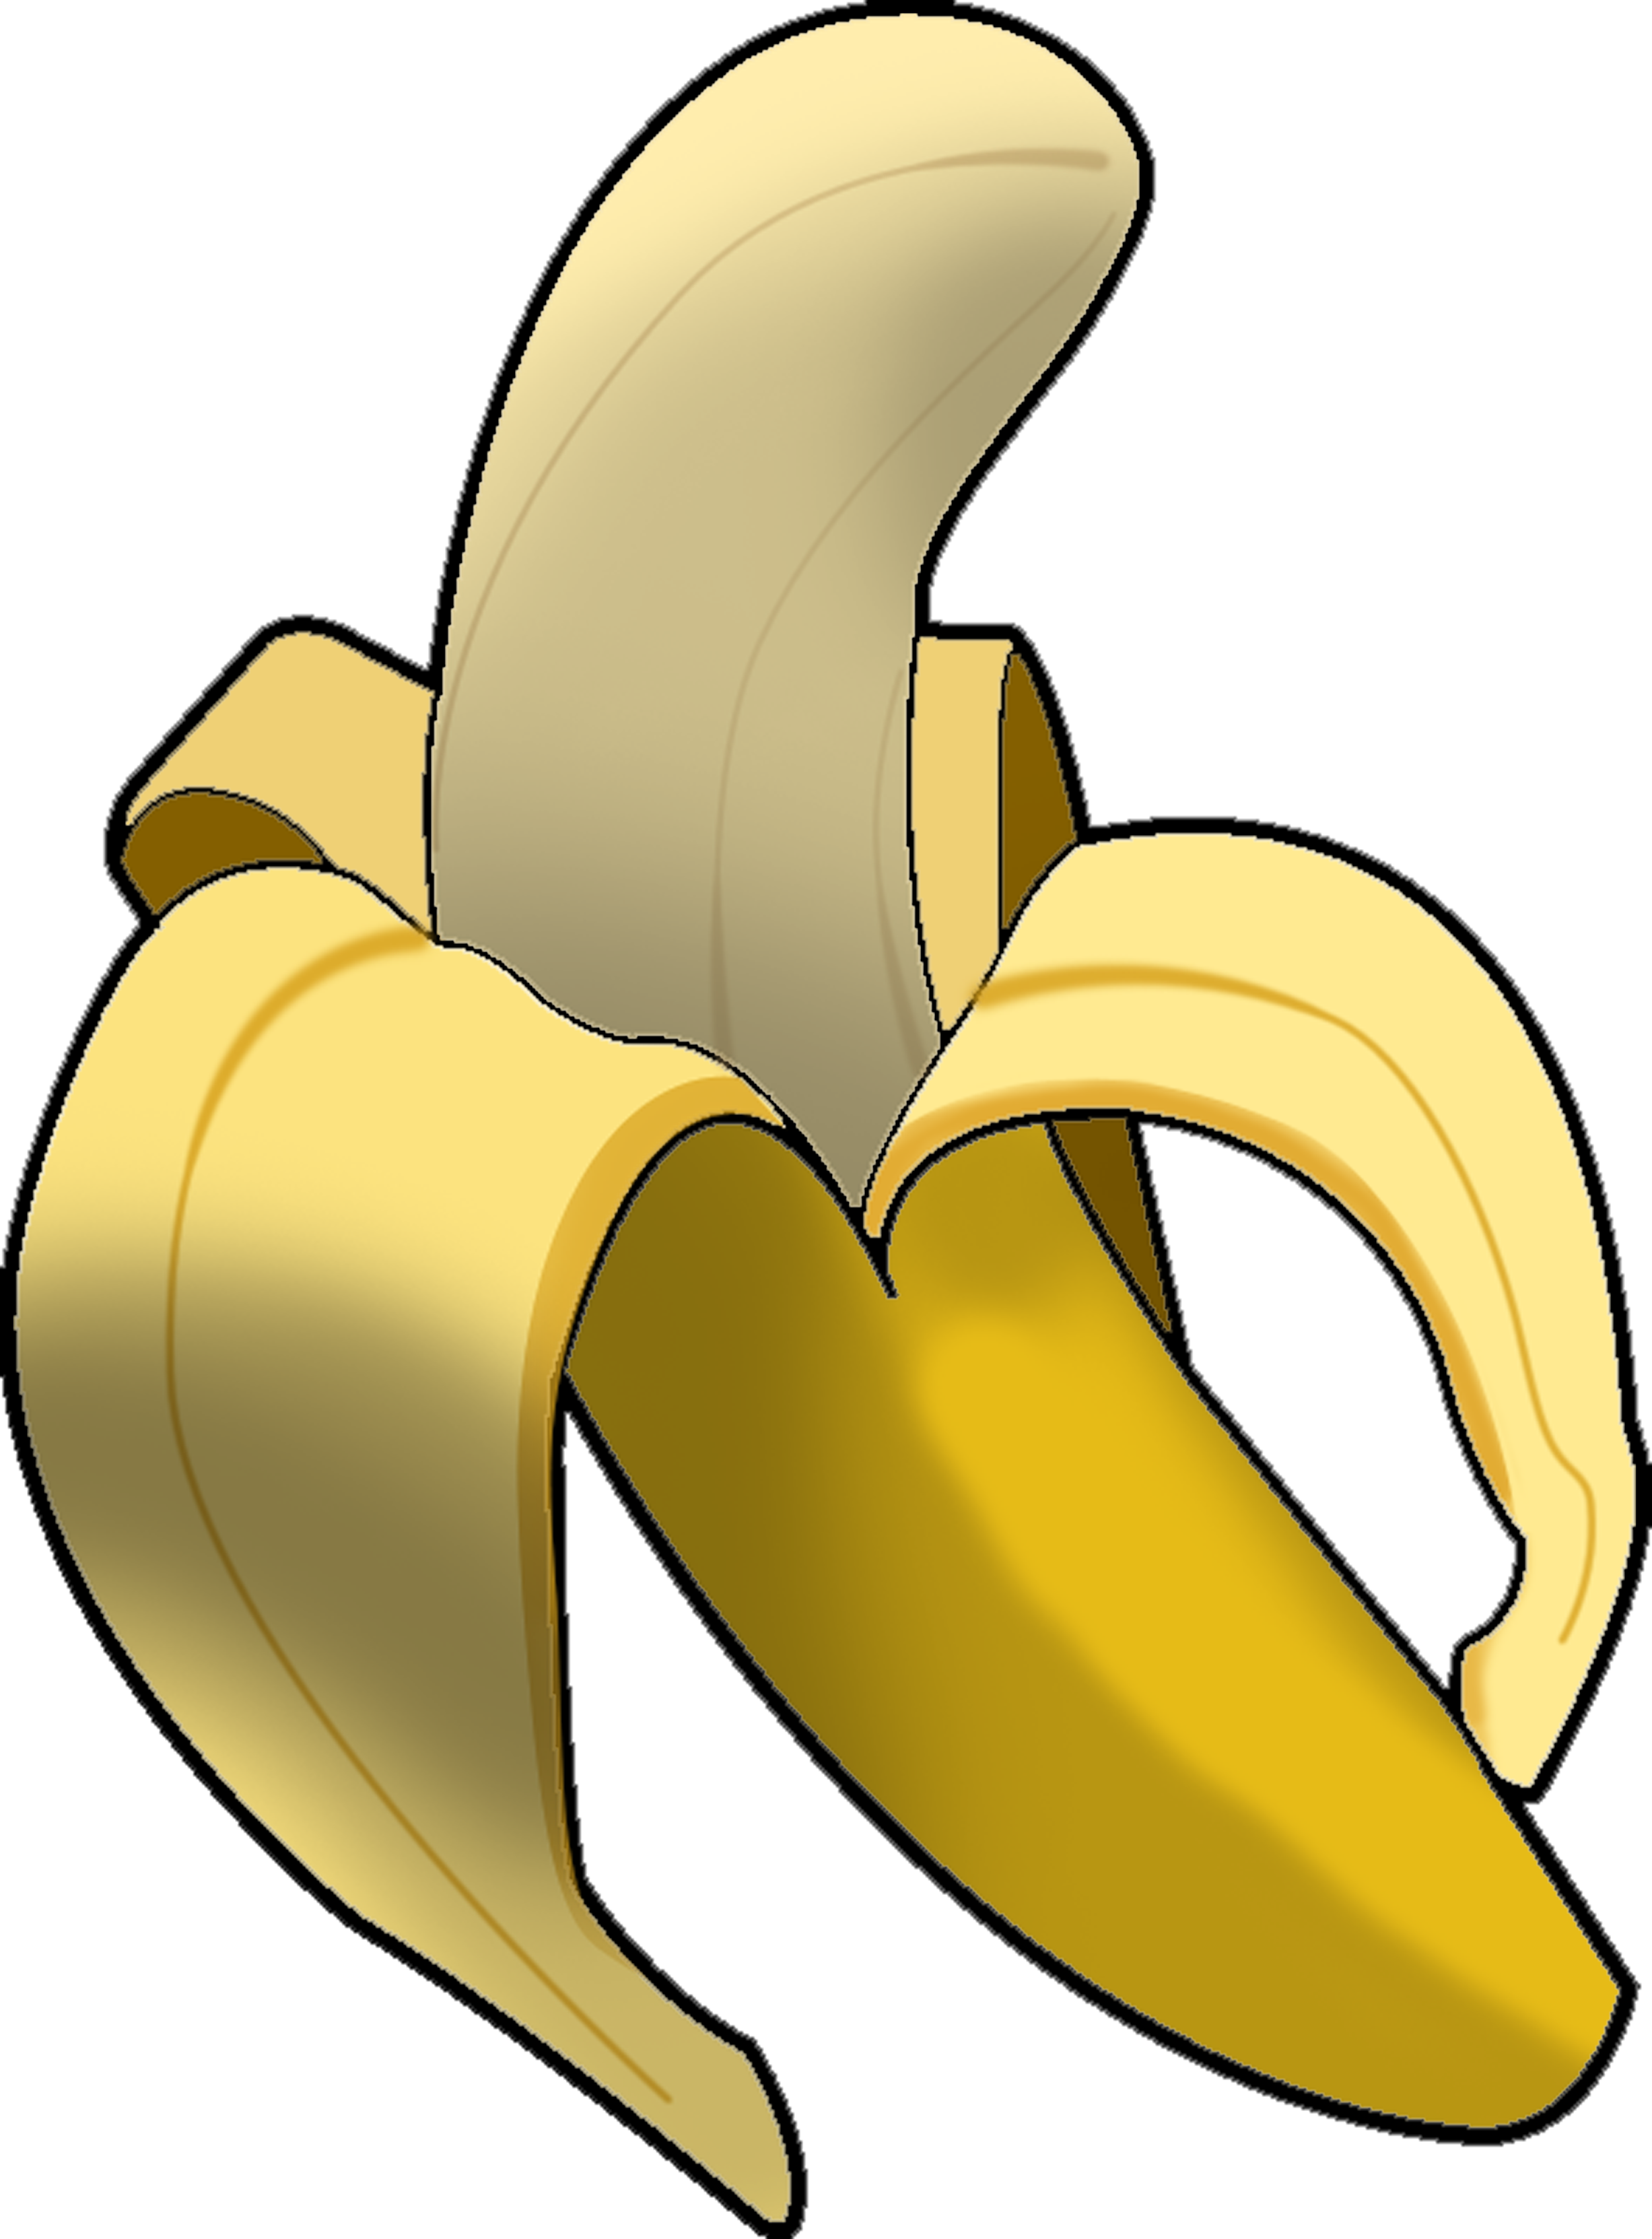 Clip Art Banana - ClipArt Best